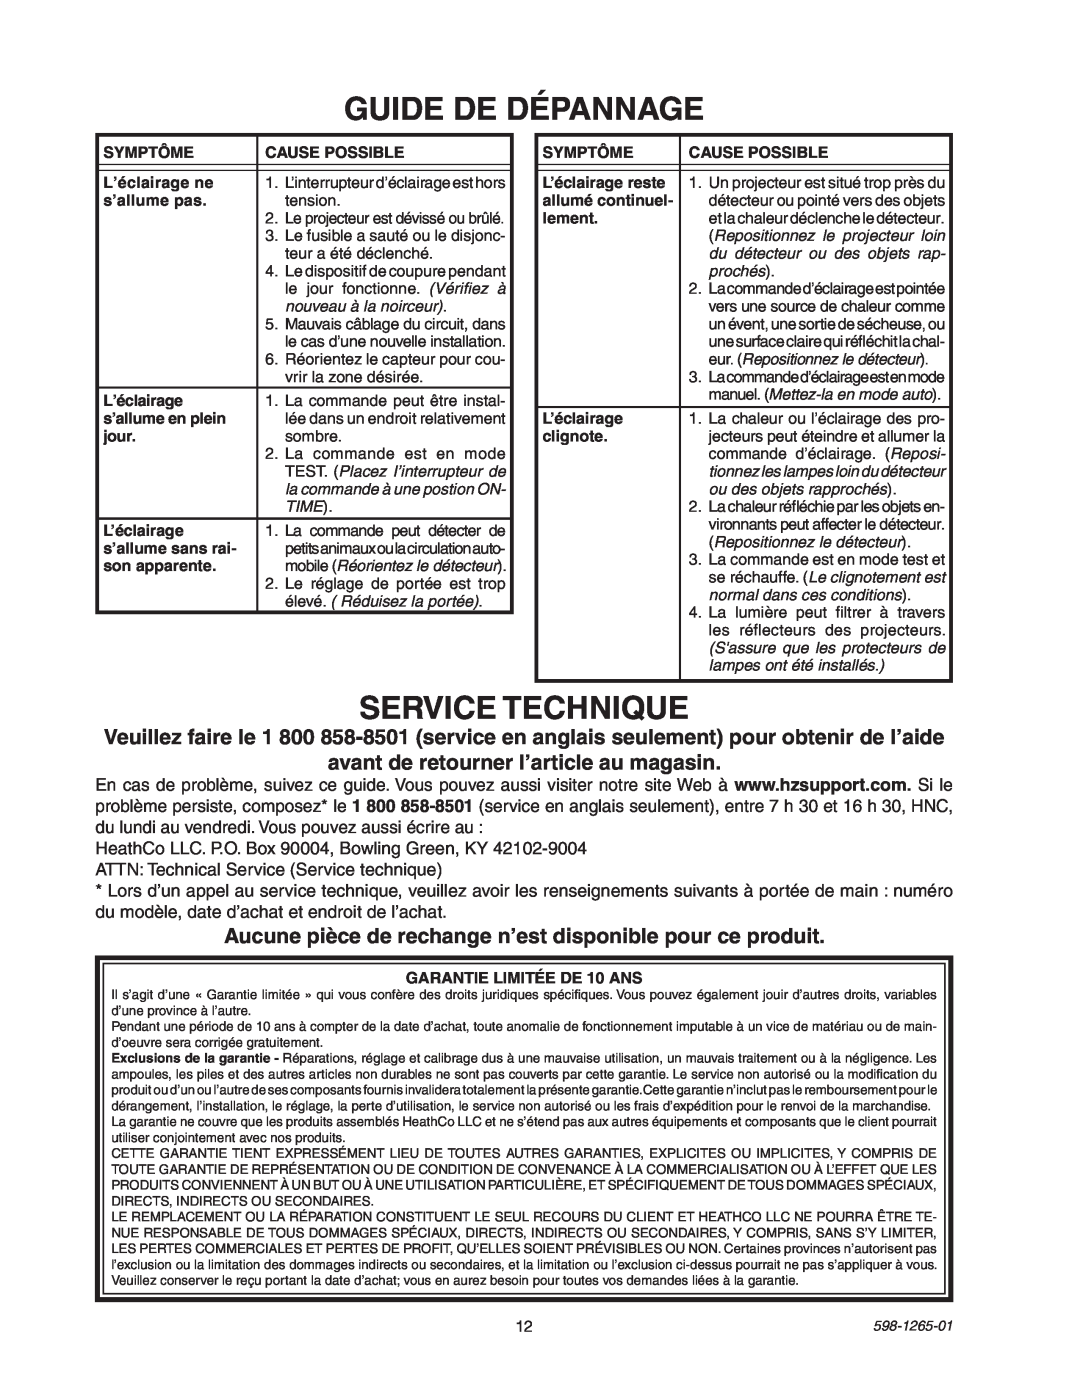 Heath Zenith SL-5412 manual Guide De Dépannage, Service Technique 